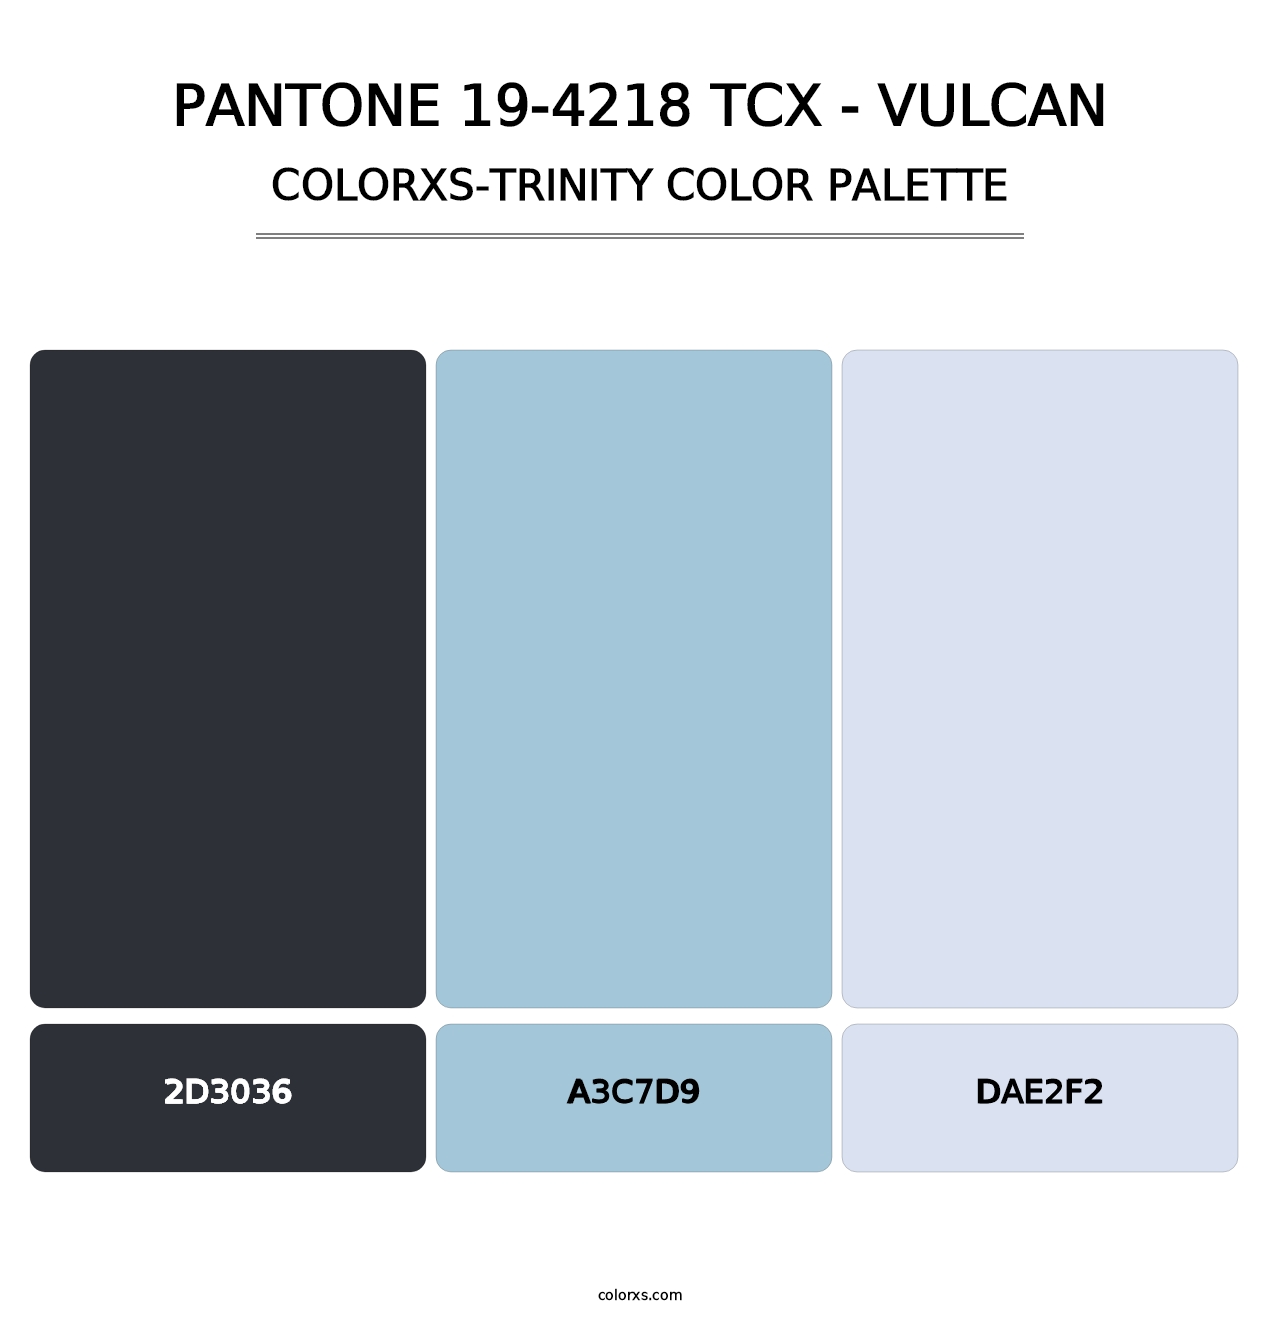 PANTONE 19-4218 TCX - Vulcan - Colorxs Trinity Palette